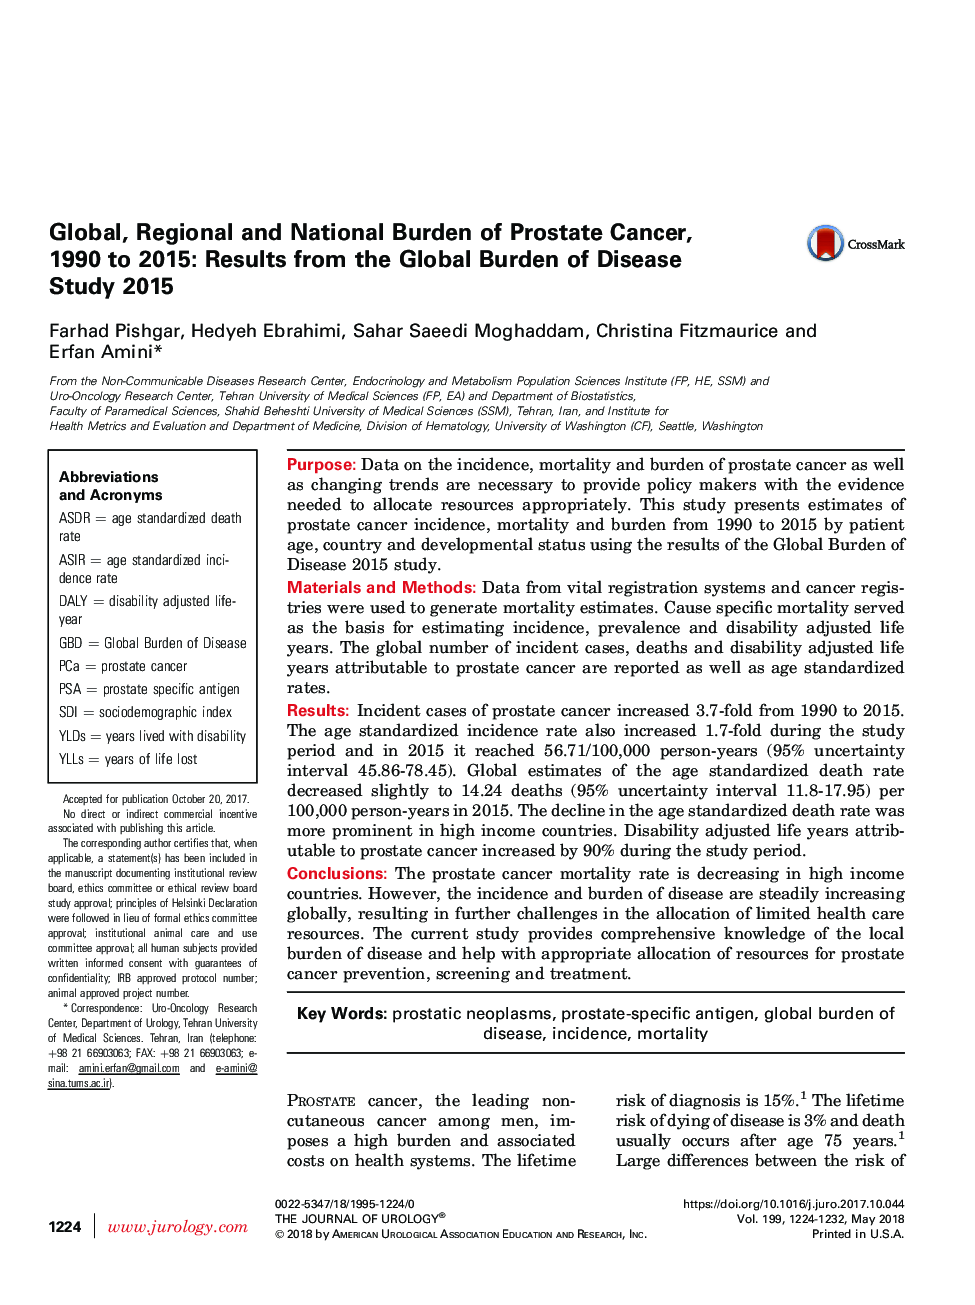 بار جهانی، منطقه ای و ملی سرطان پروستات، 1990 تا 2015: نتایج مطالعات برون گرا بیماری های 2015 